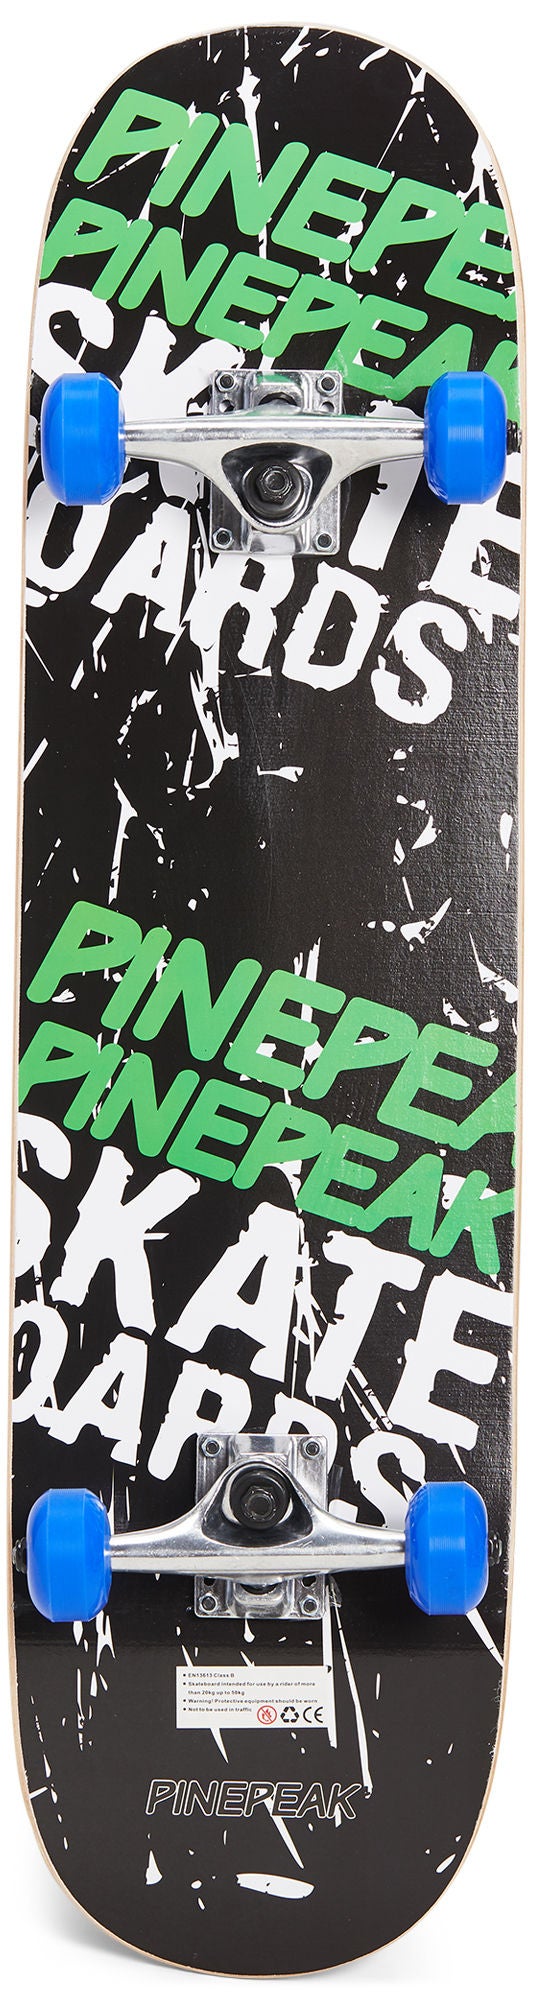 Pinepeak Skateboard, Schwarz/Grün von Pinepeak